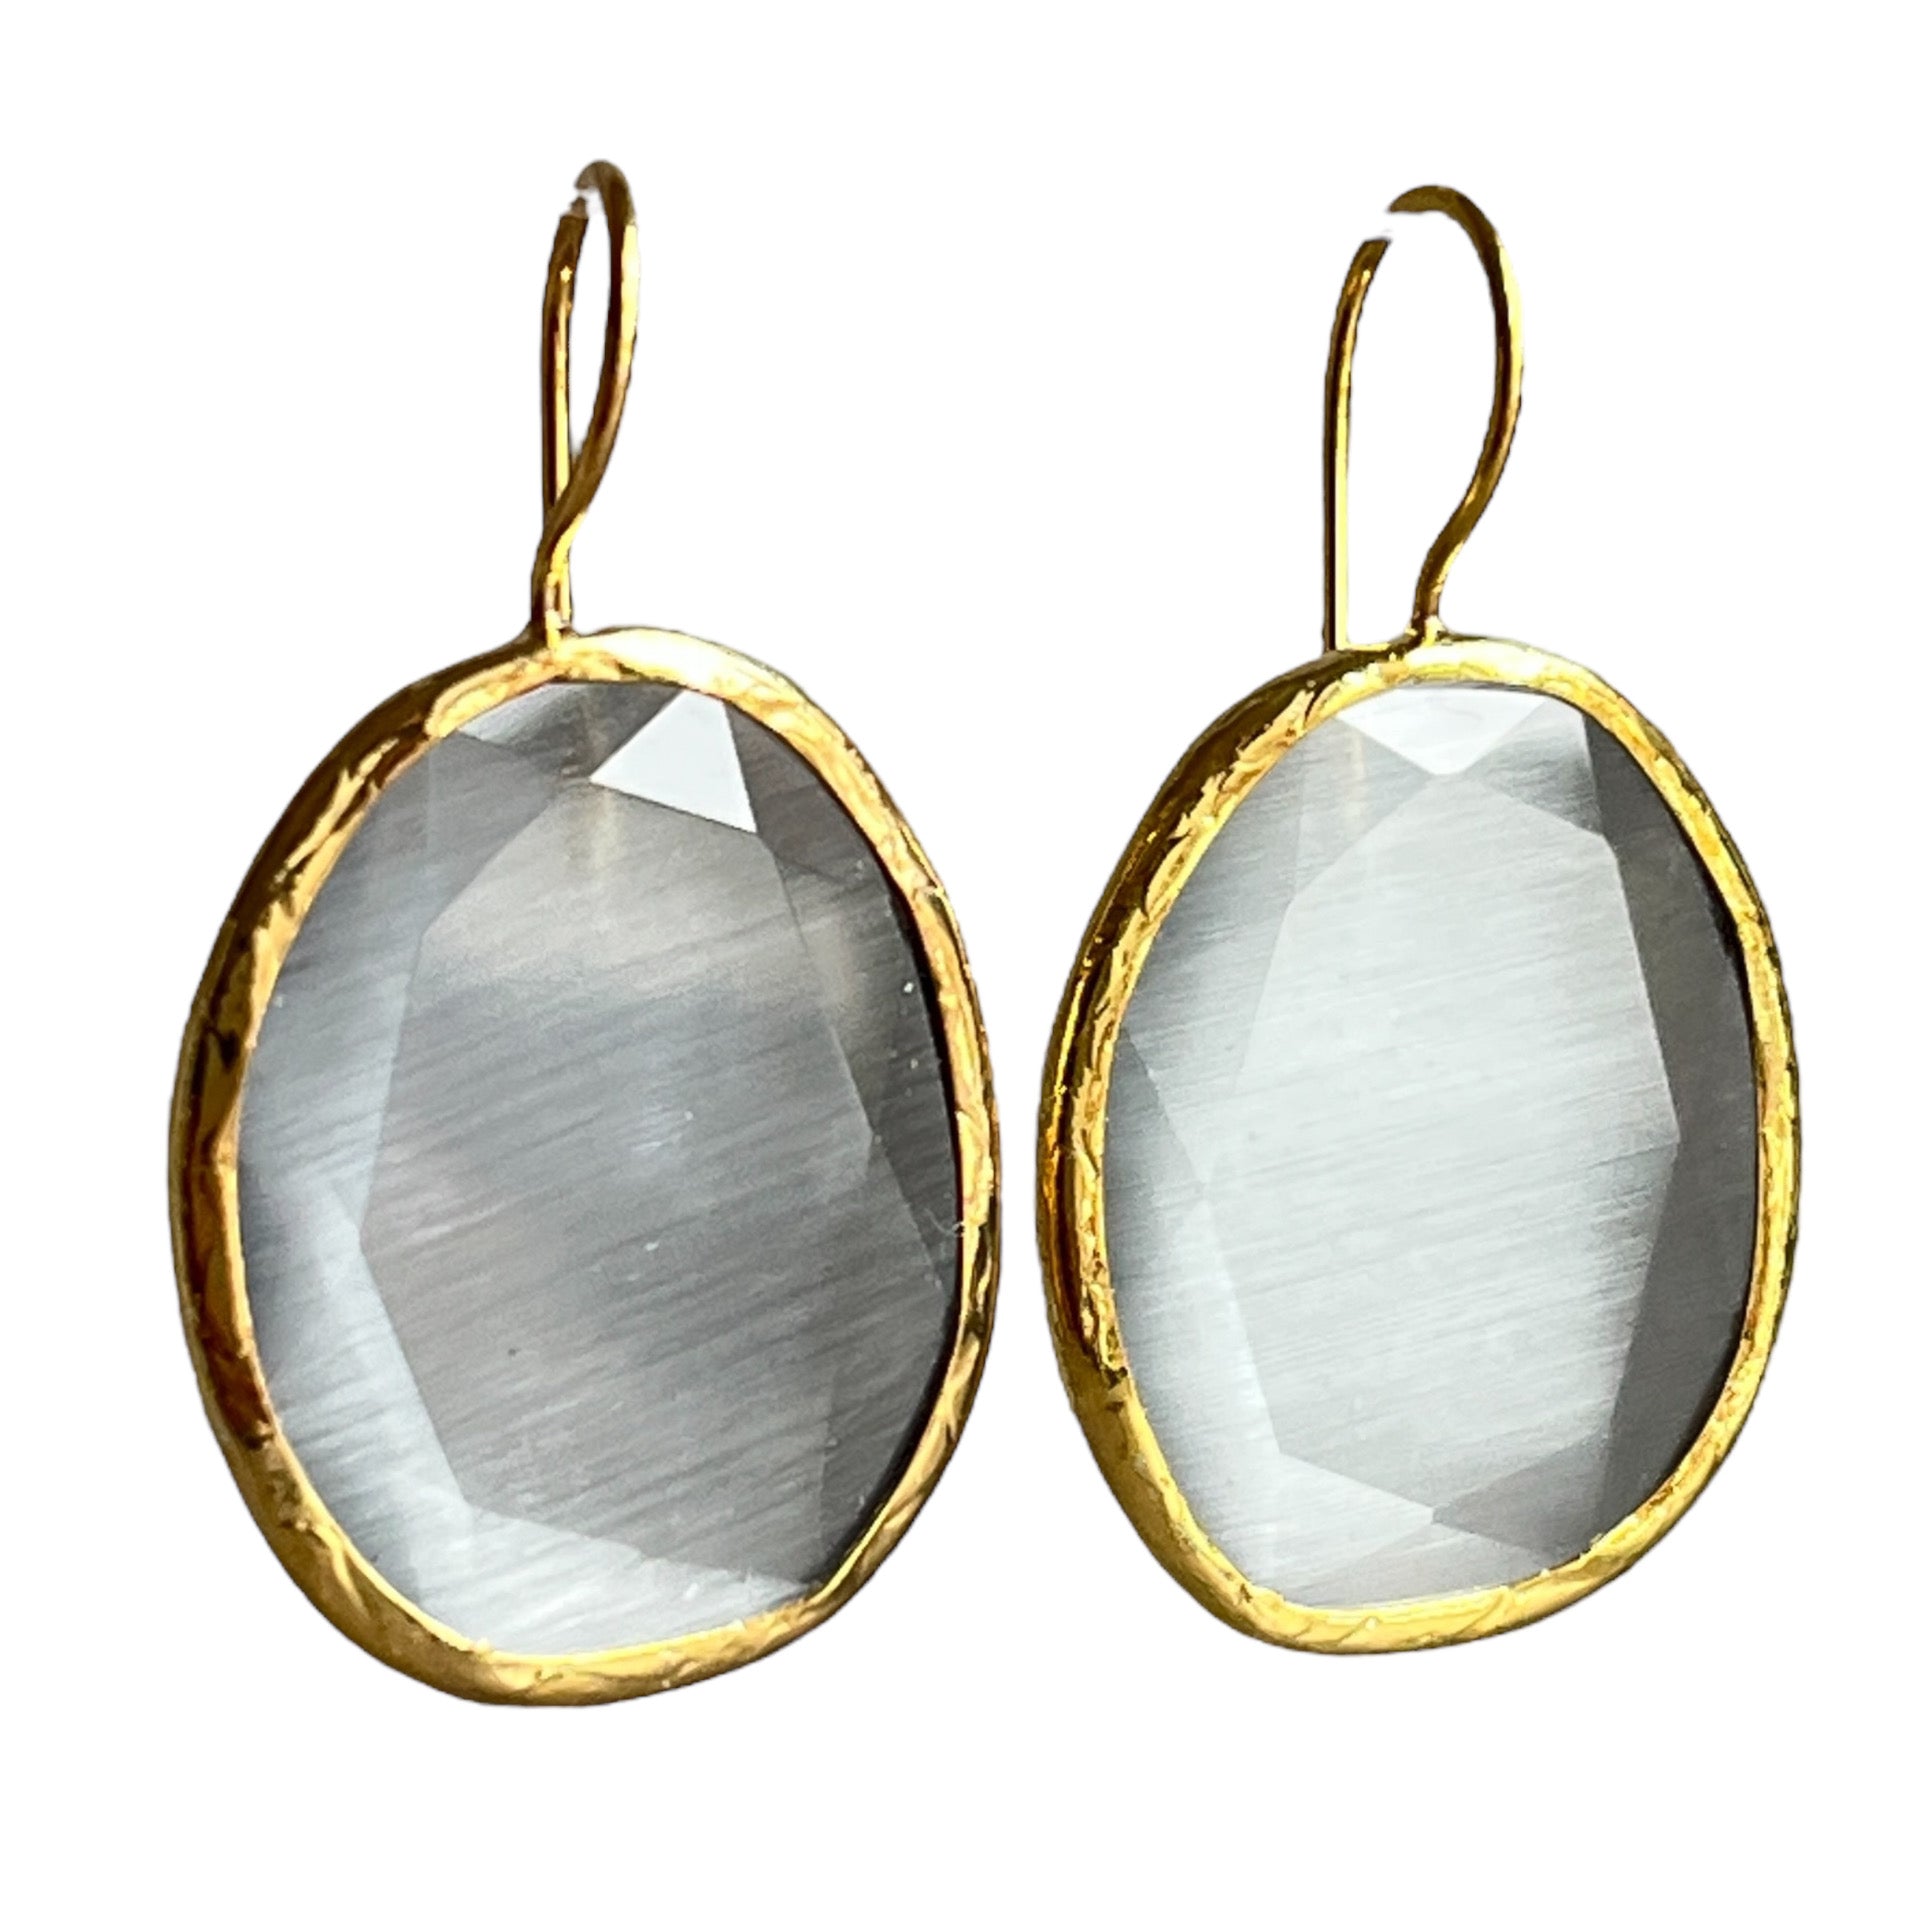 Boucles d’oreilles "COLORADO" pierre naturelle Agate grise dorées or fin